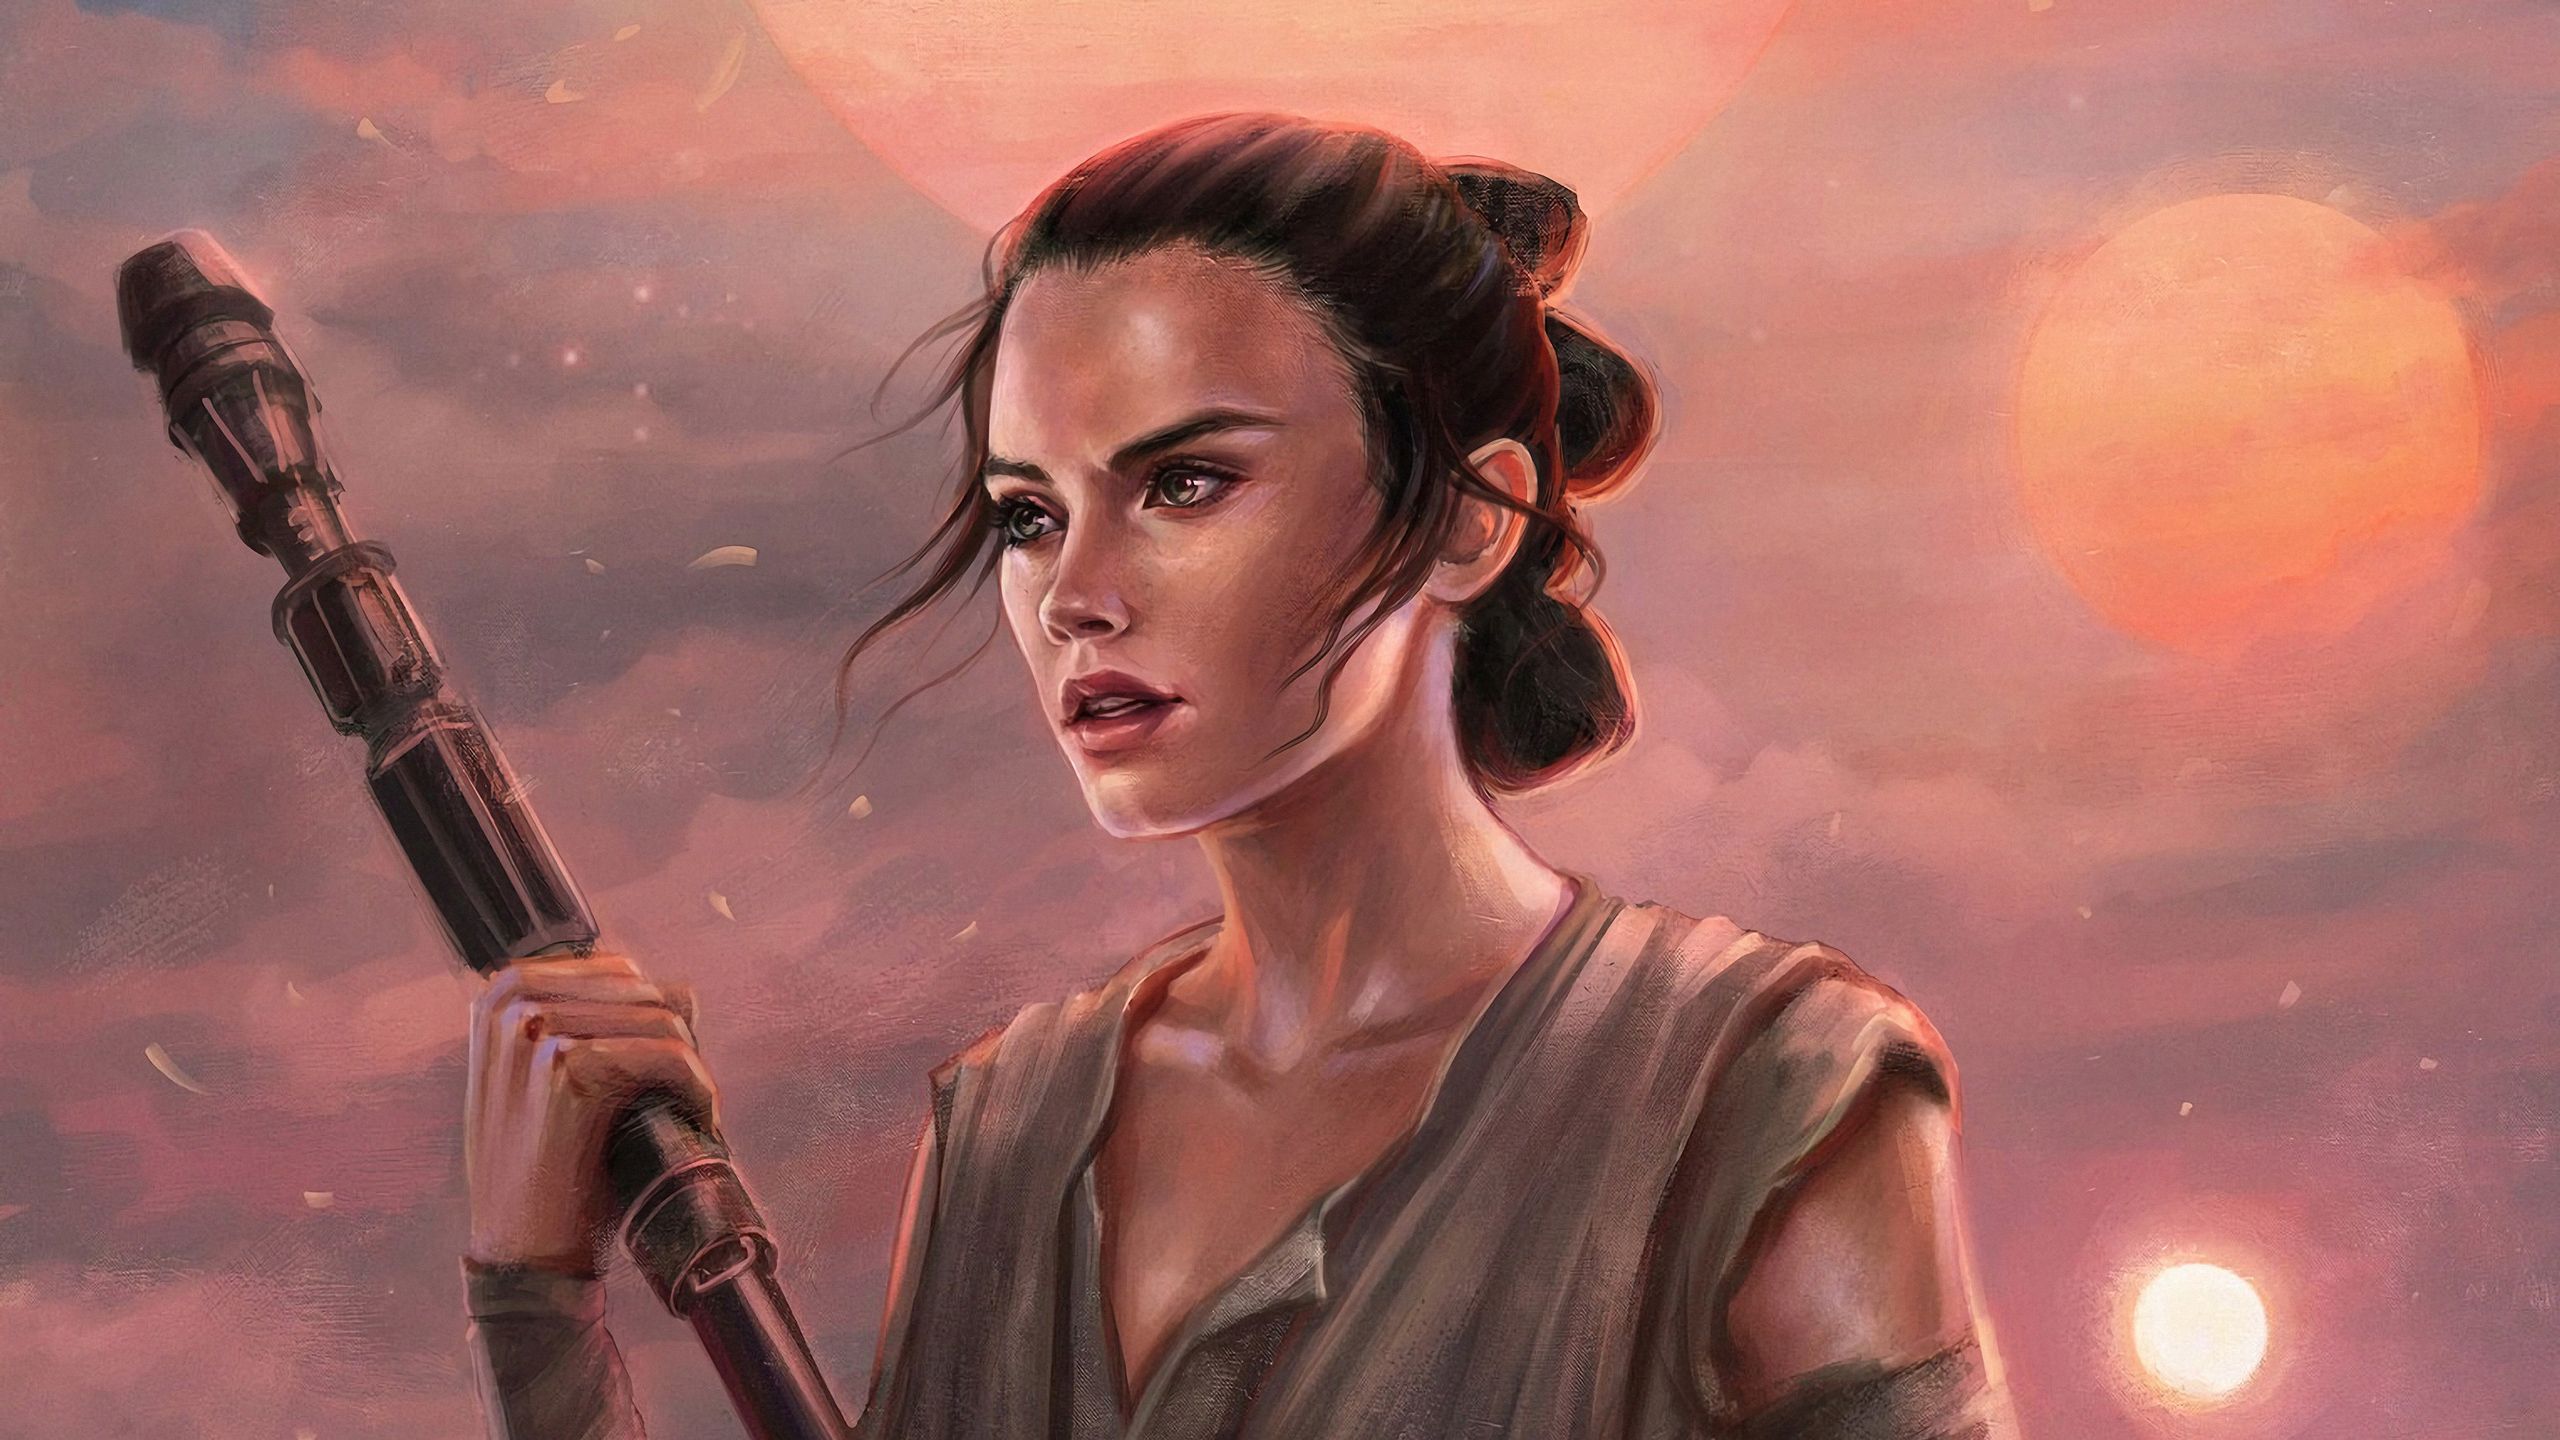 Sci Fi Star Wars Rey HD Wallpaper Background Image In